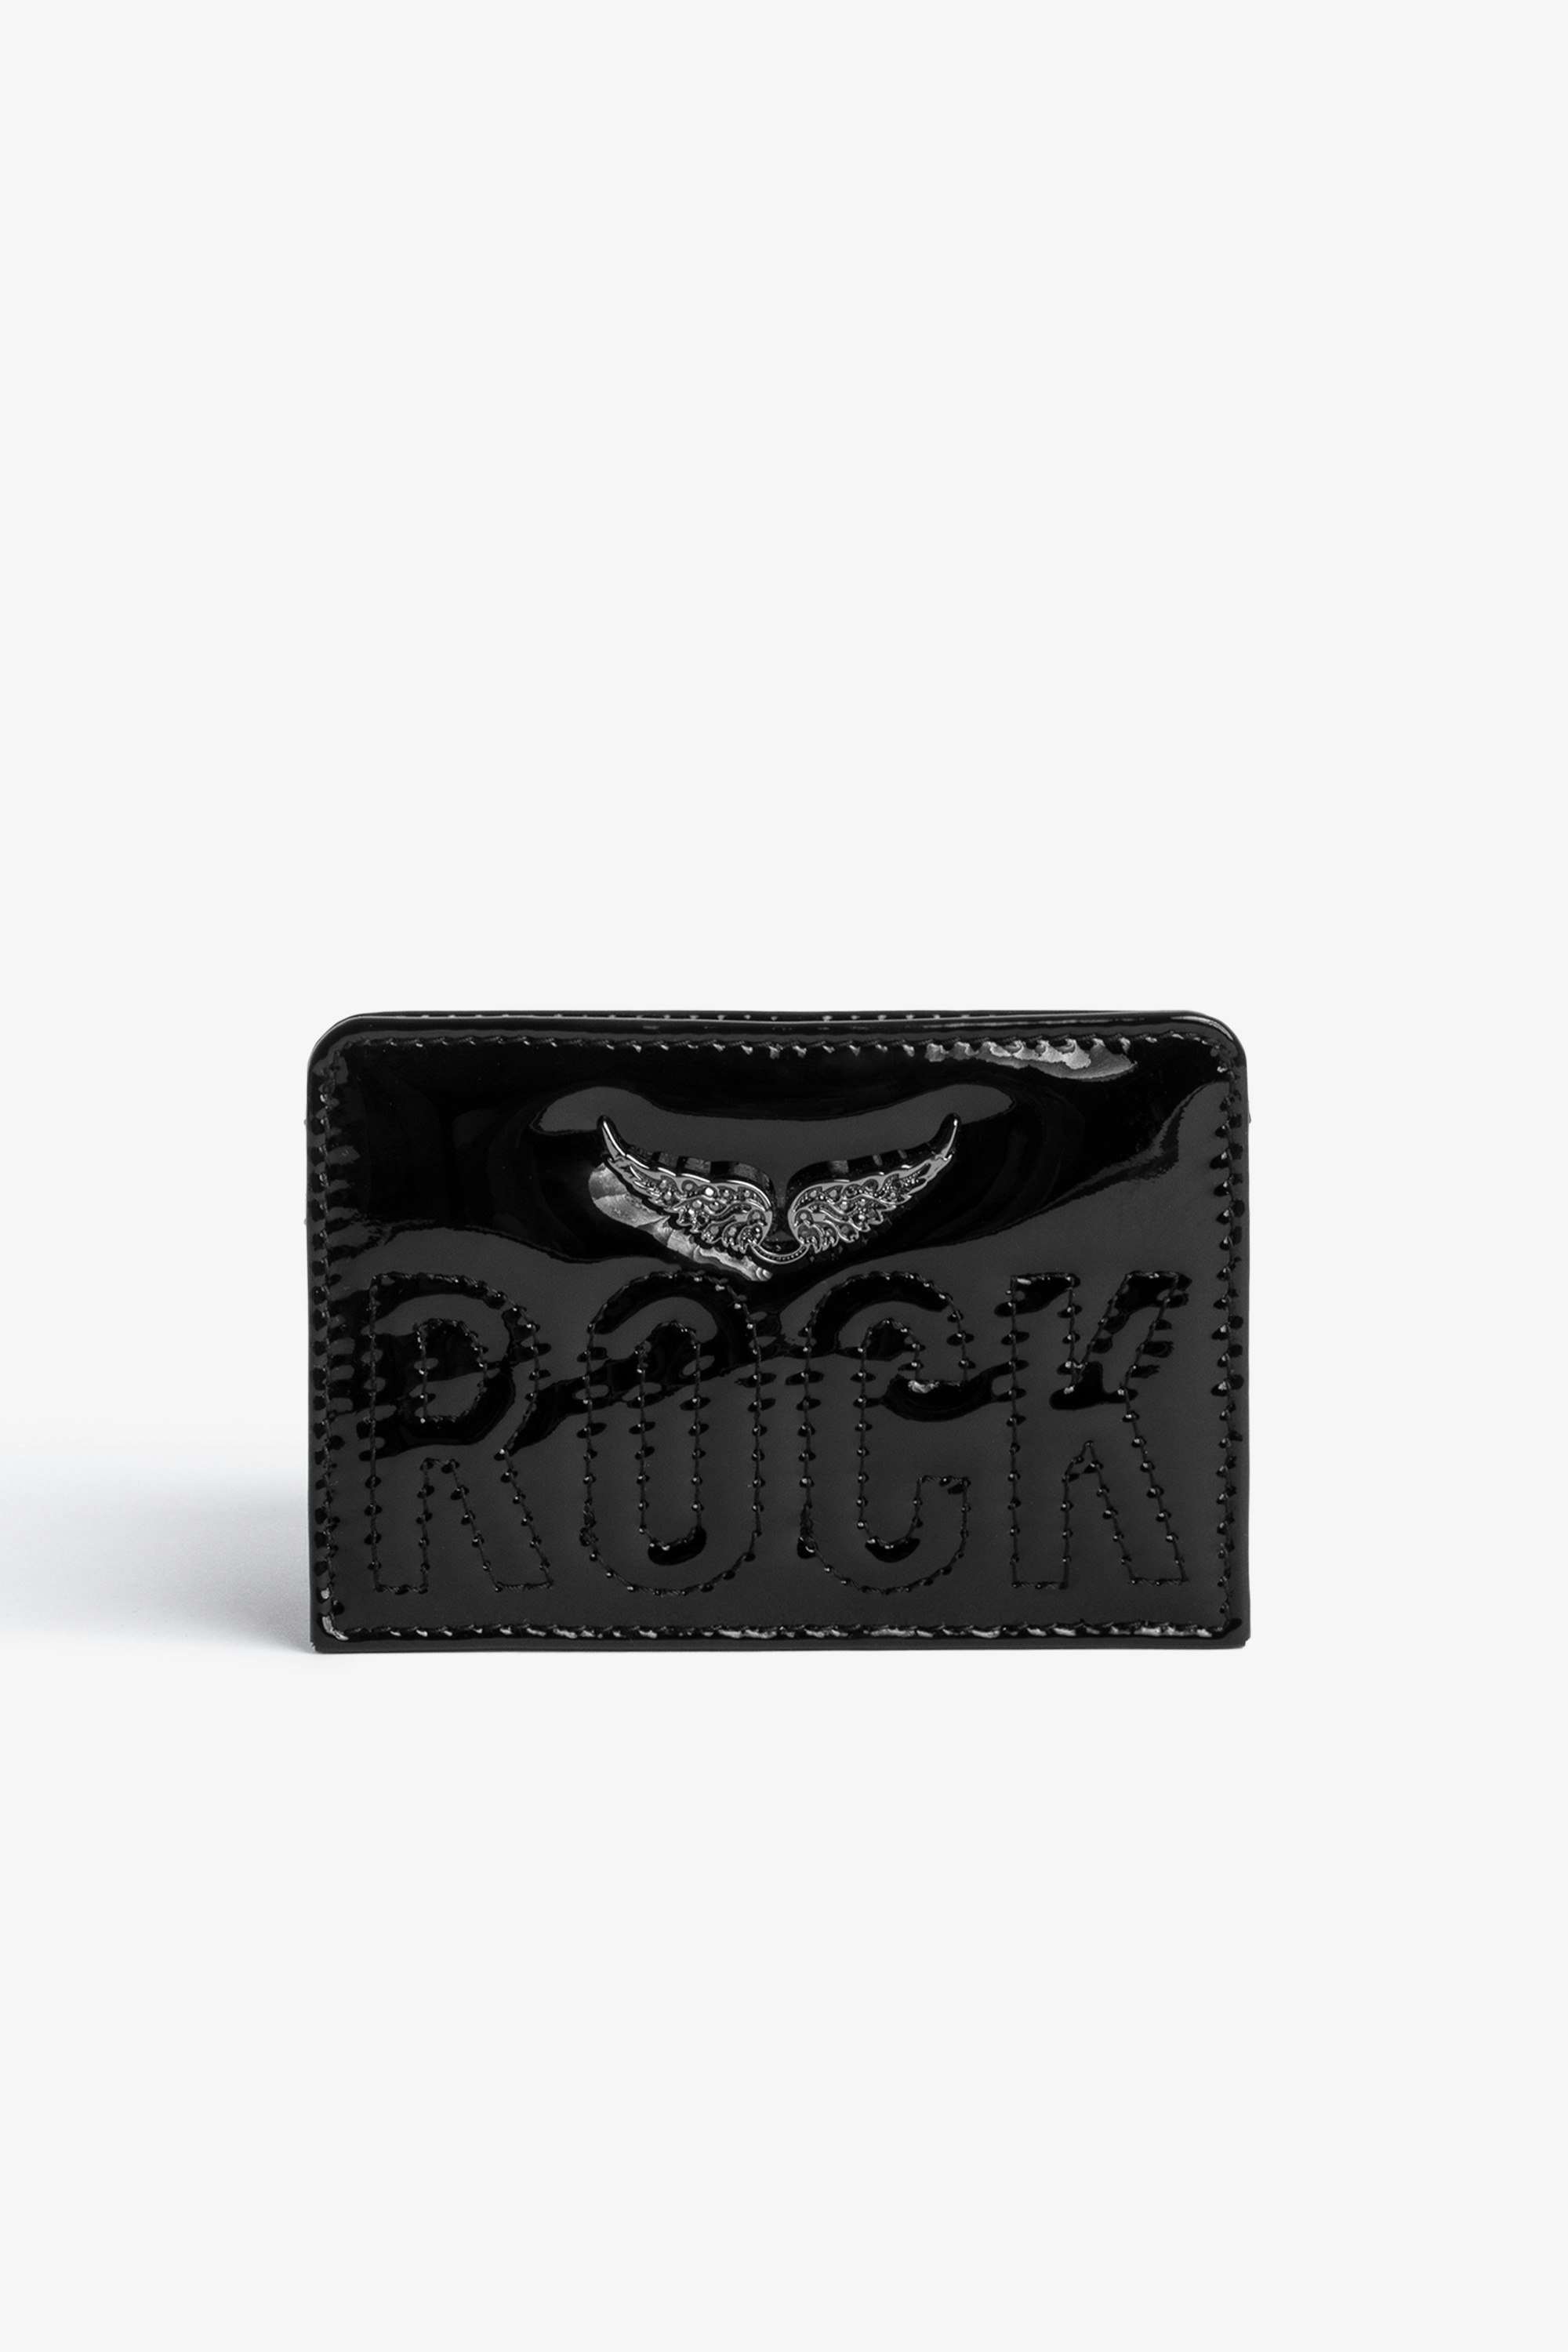 Kartenetui ZV Pass Damen-Kartenetui aus glänzendem schwarzen Leder mit aufgestepptem Schriftzug „Rock“ und einem kristallbesetztem Flügel-Charm